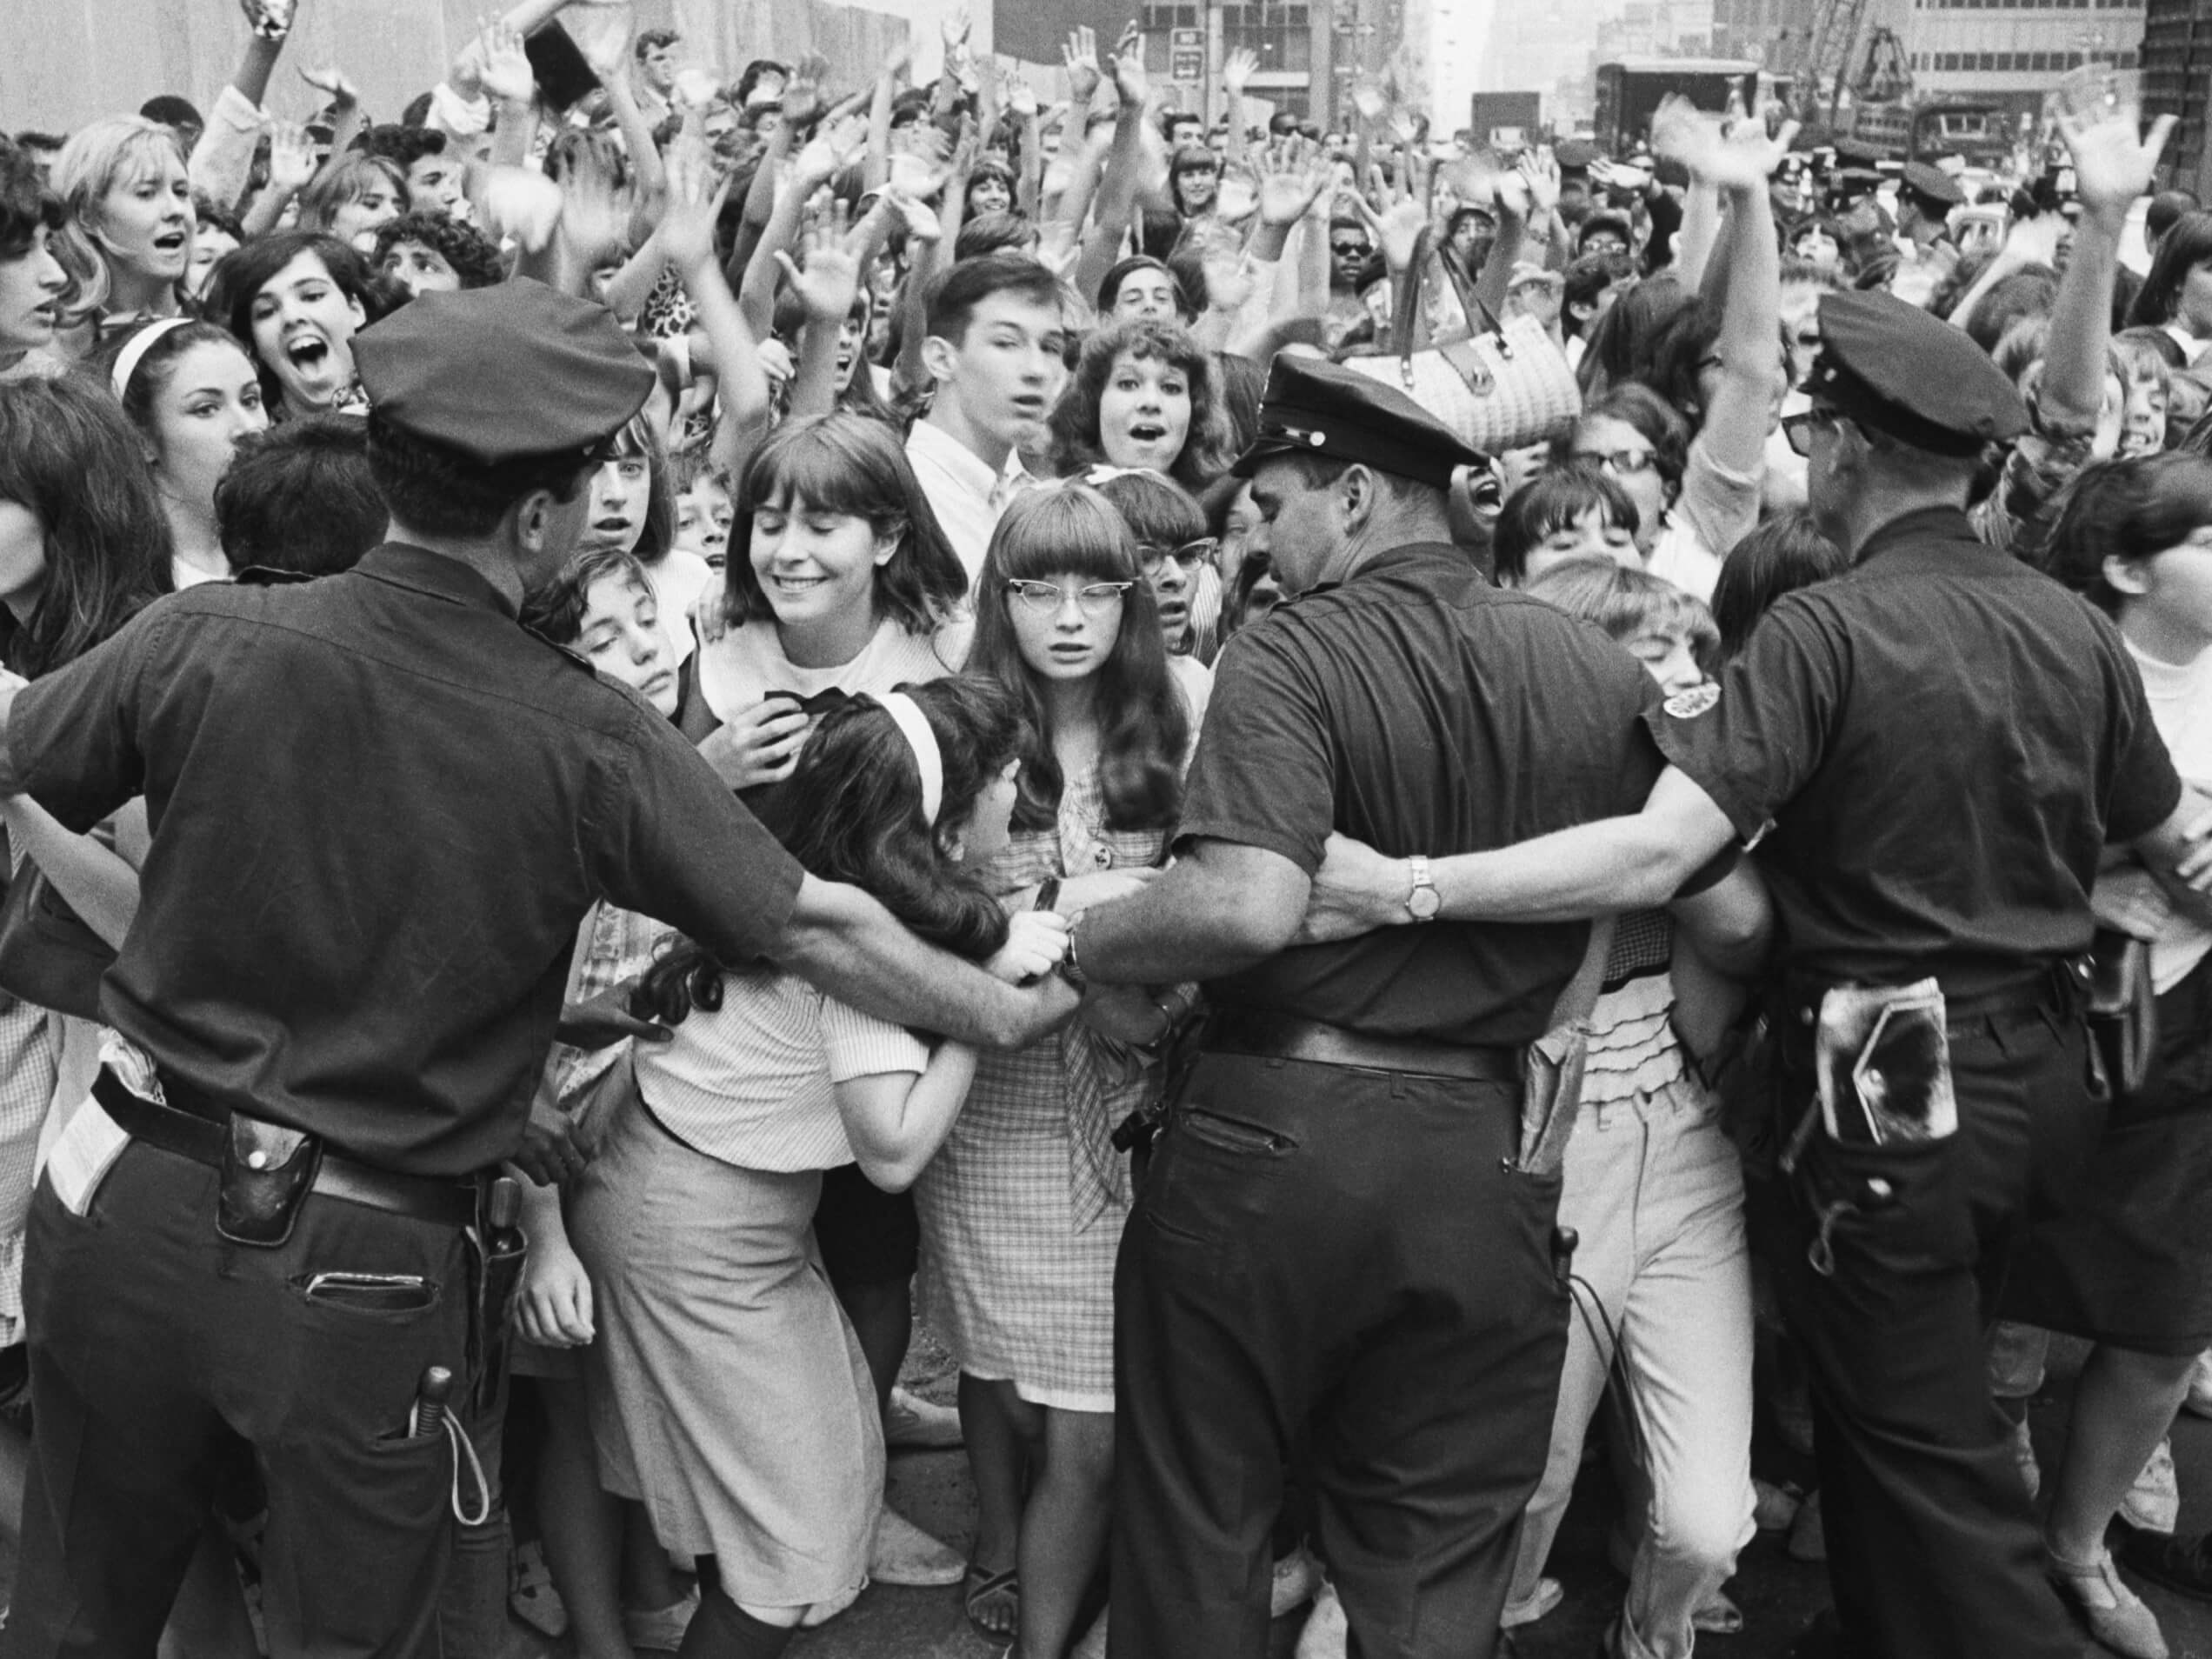 John Lennon The Beatles'ın "Devrim"indeki 1 Satırın Polise Yorum Yaptığını Söyledi